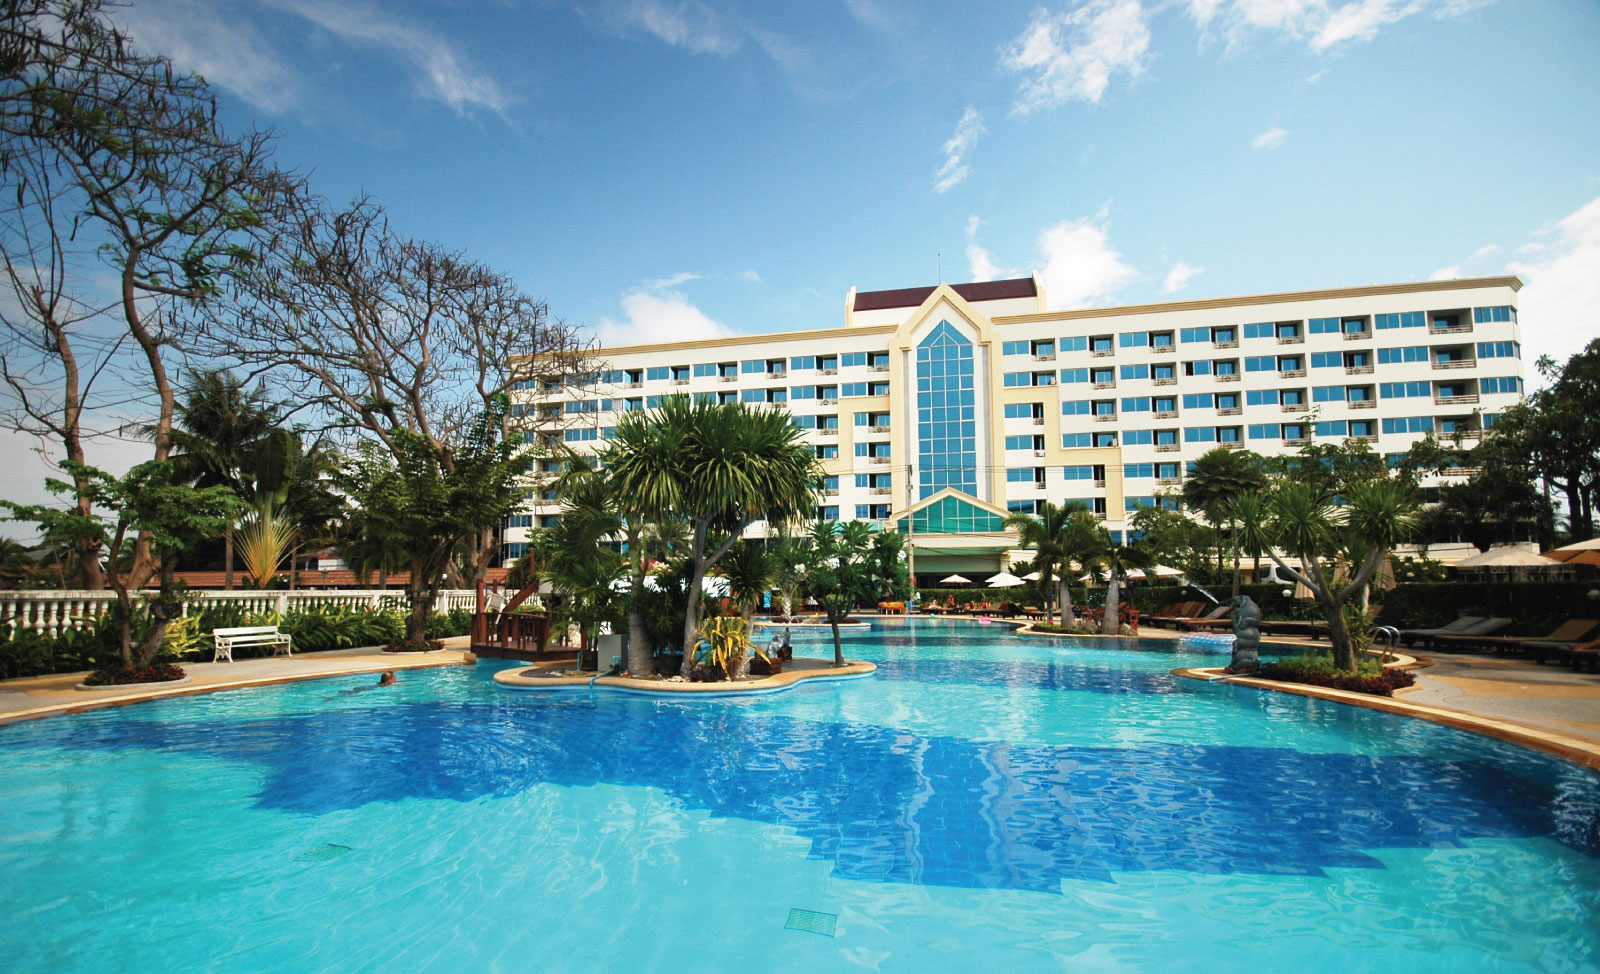 Jomtien Garden Hotel & Resort on the Jomtien Beach, Pattaya, Thailand